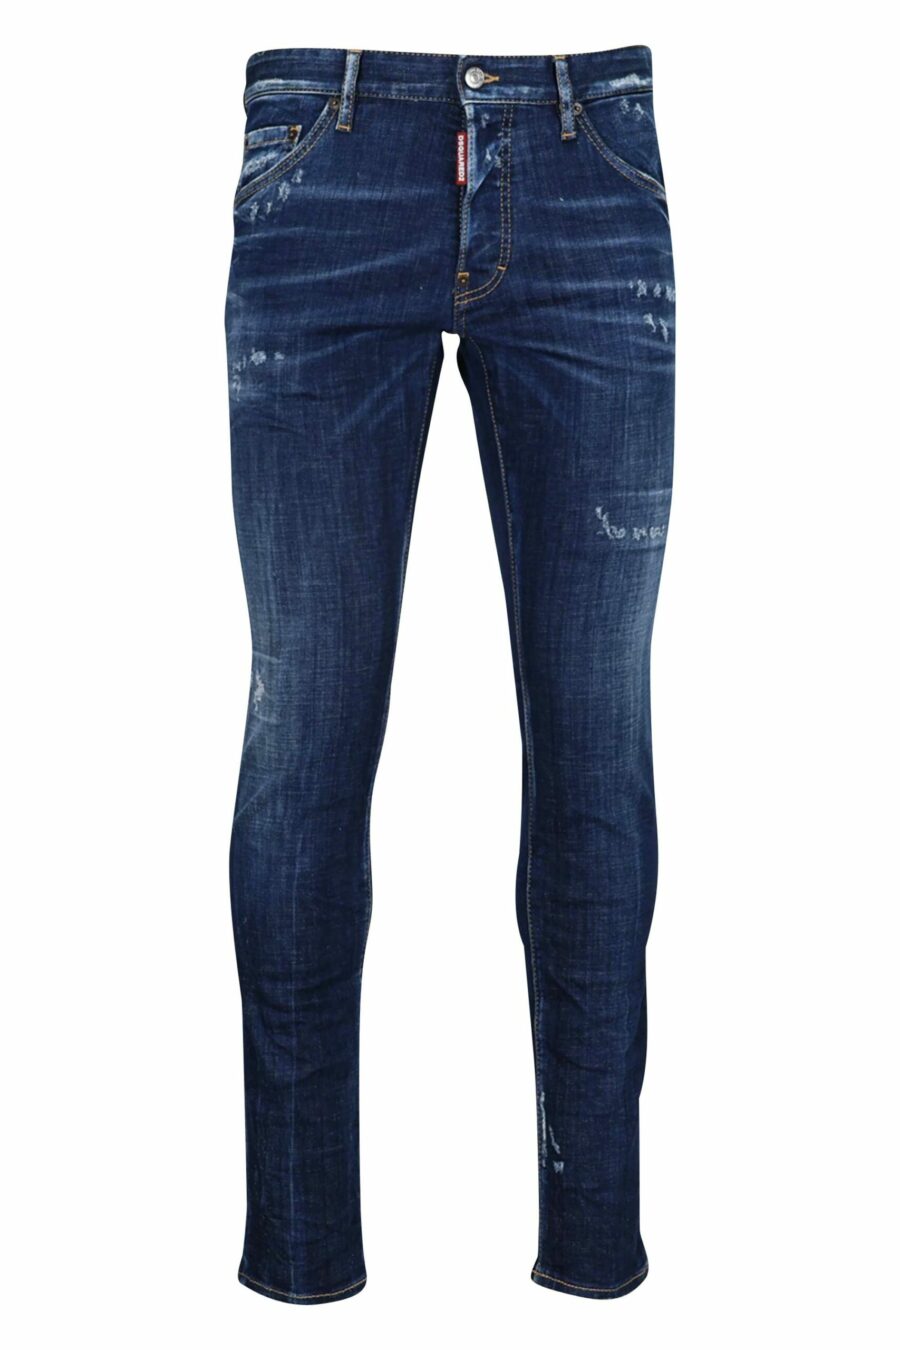 Blaue "Cool Guy"-Jeans mit Abnutzungsspuren - 8054148102005 skaliert